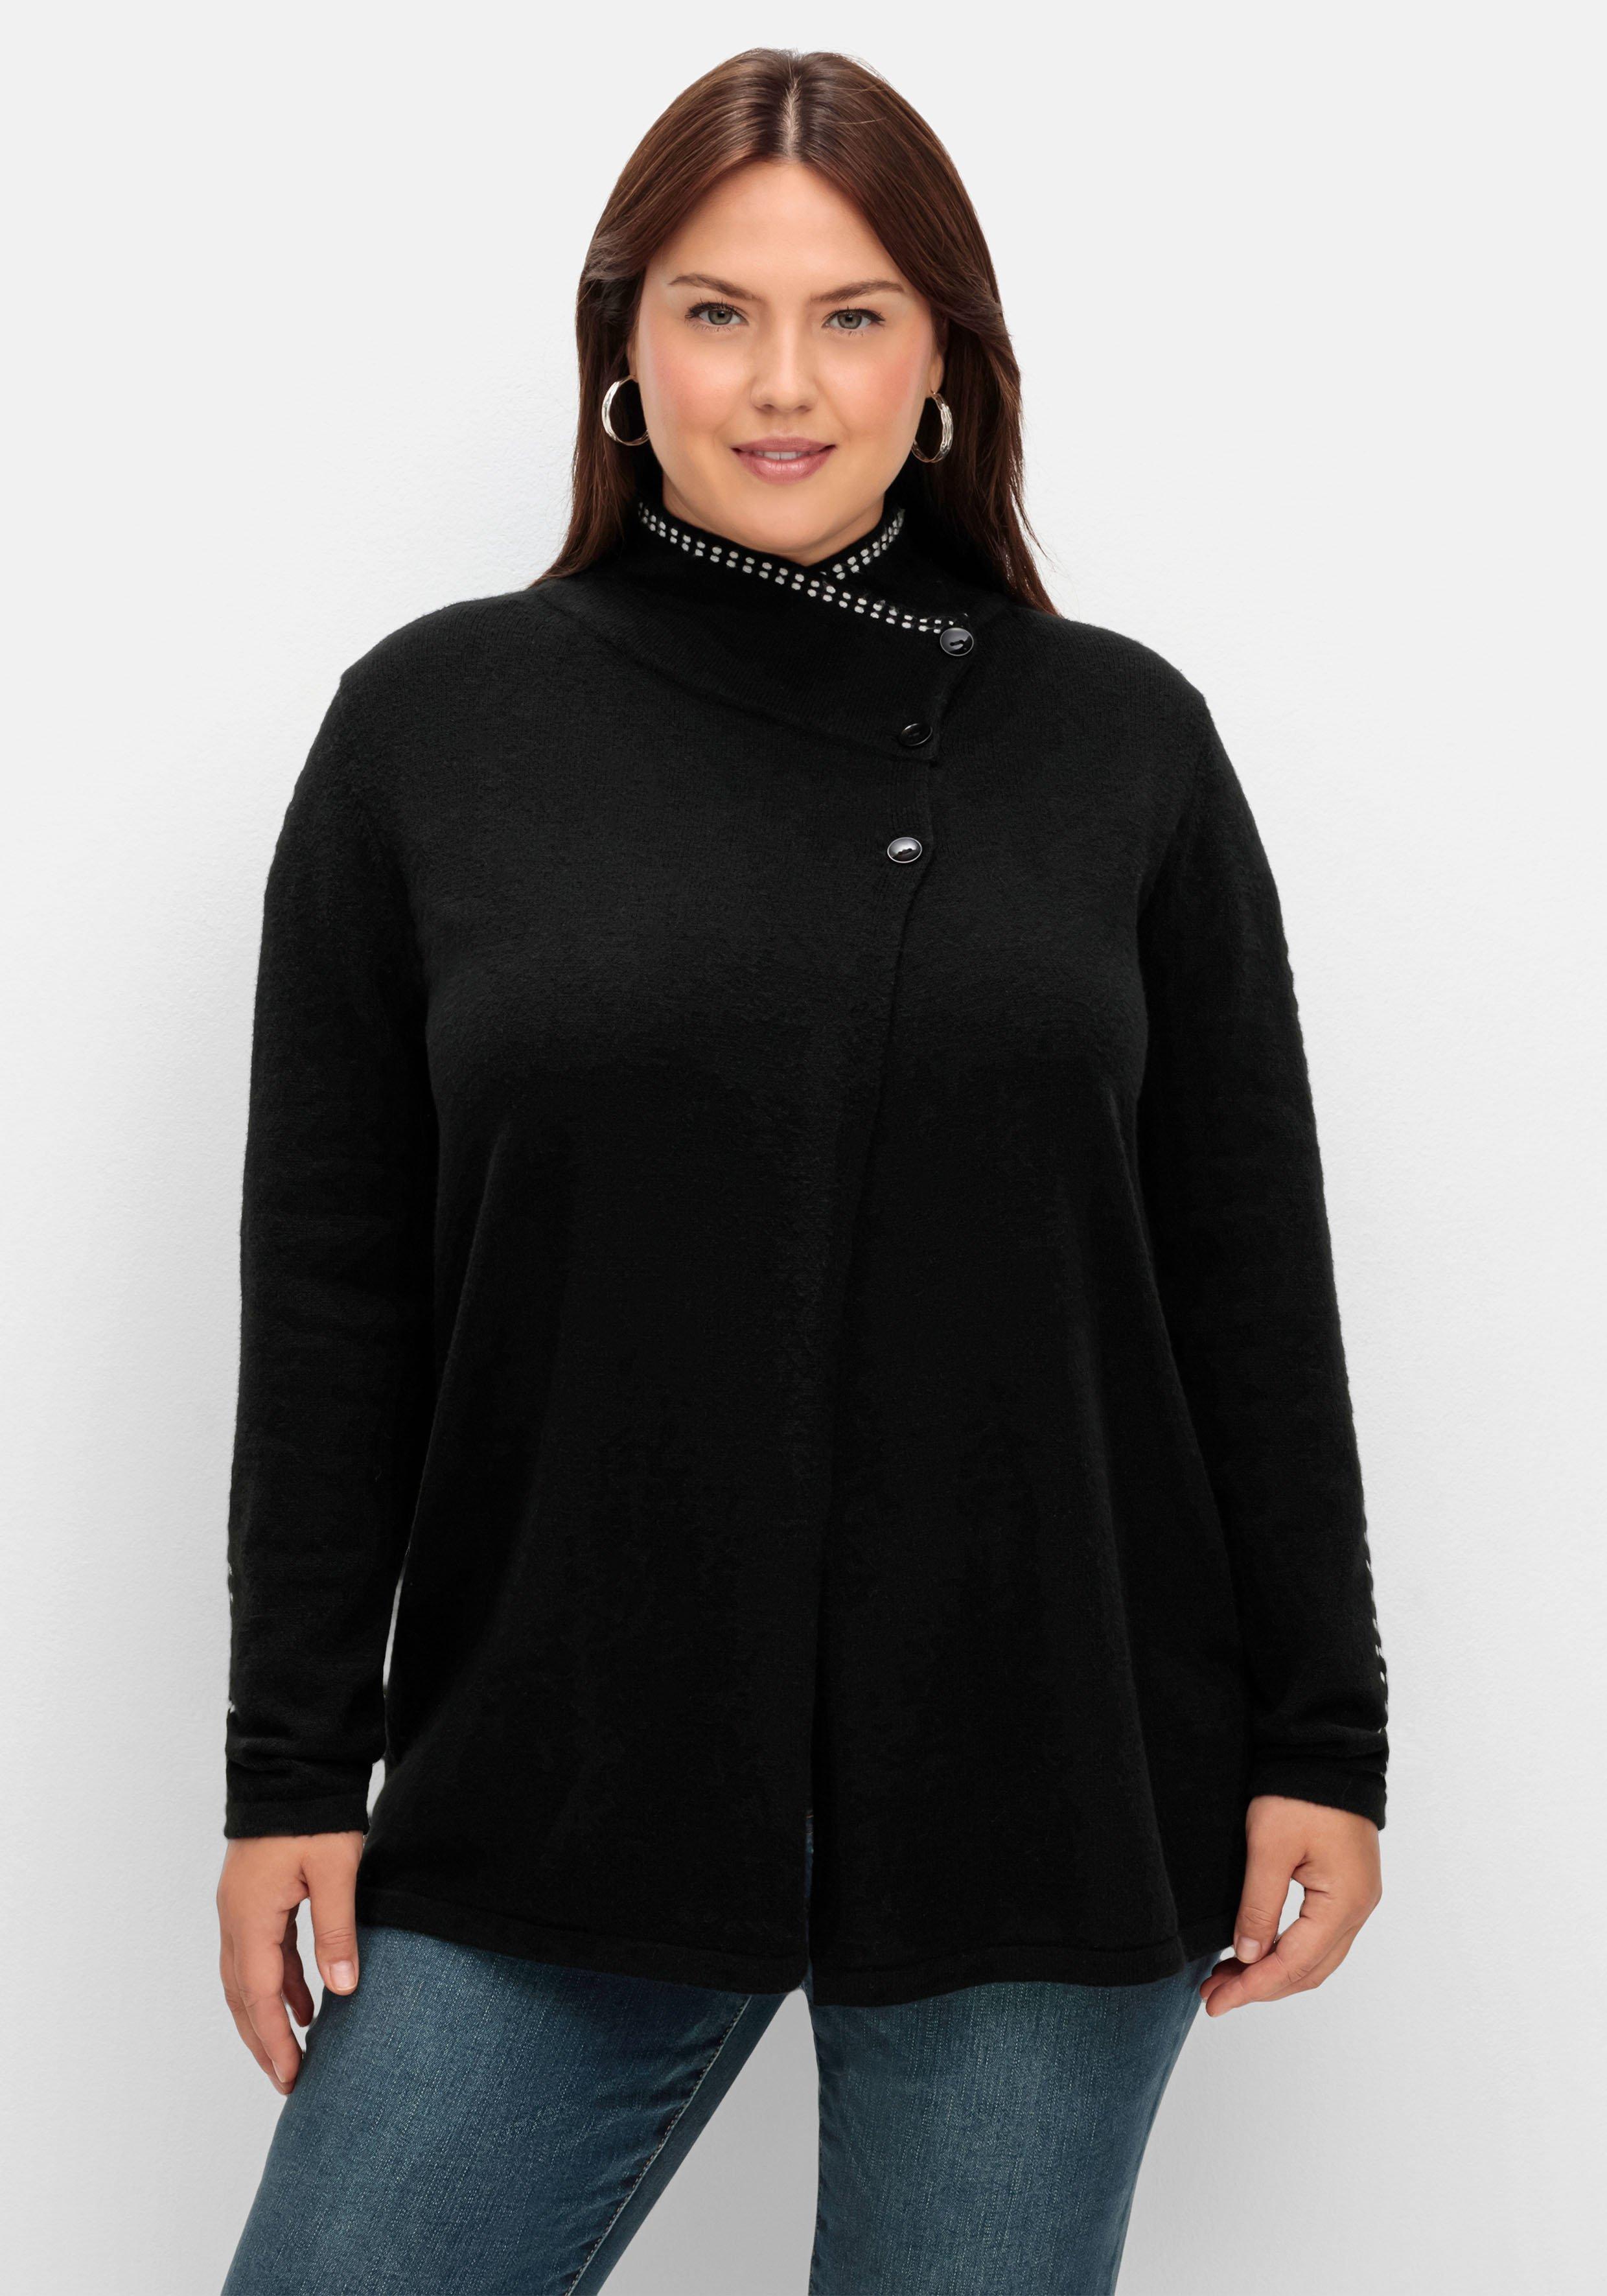 Damen Pullover & Strickjacken große Größen schwarz › Größe 40 | sheego ♥  Plus Size Mode | Cardigans